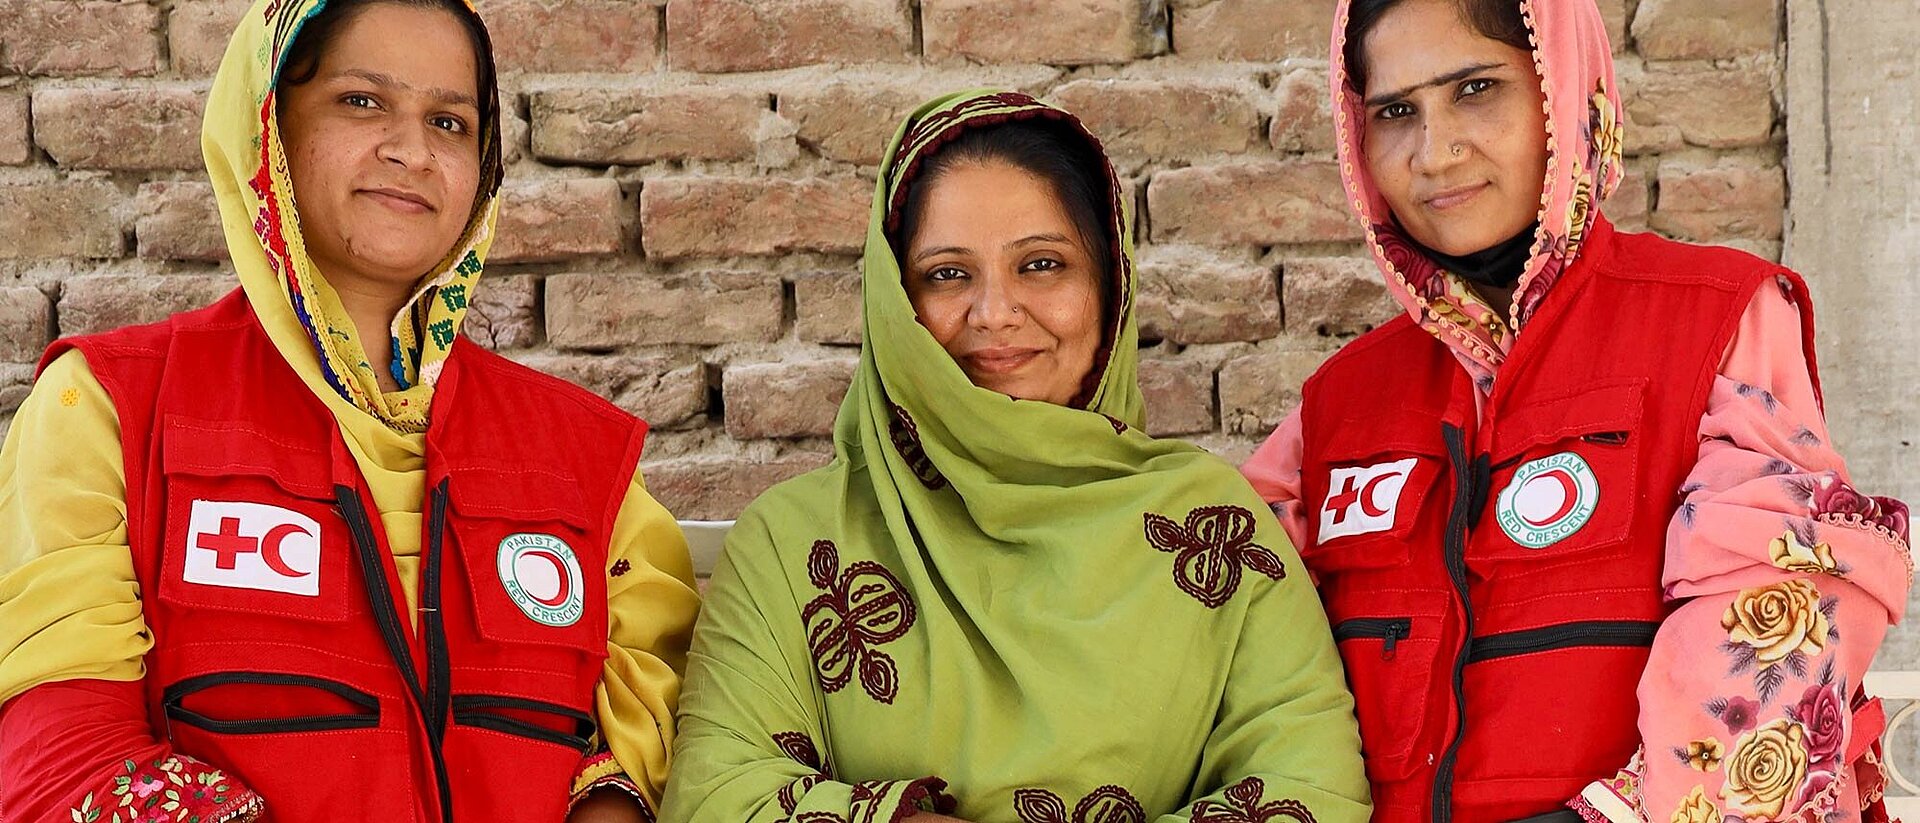 Drei pakistanische Frauen - zwei in Rothalbmond-Kleidung